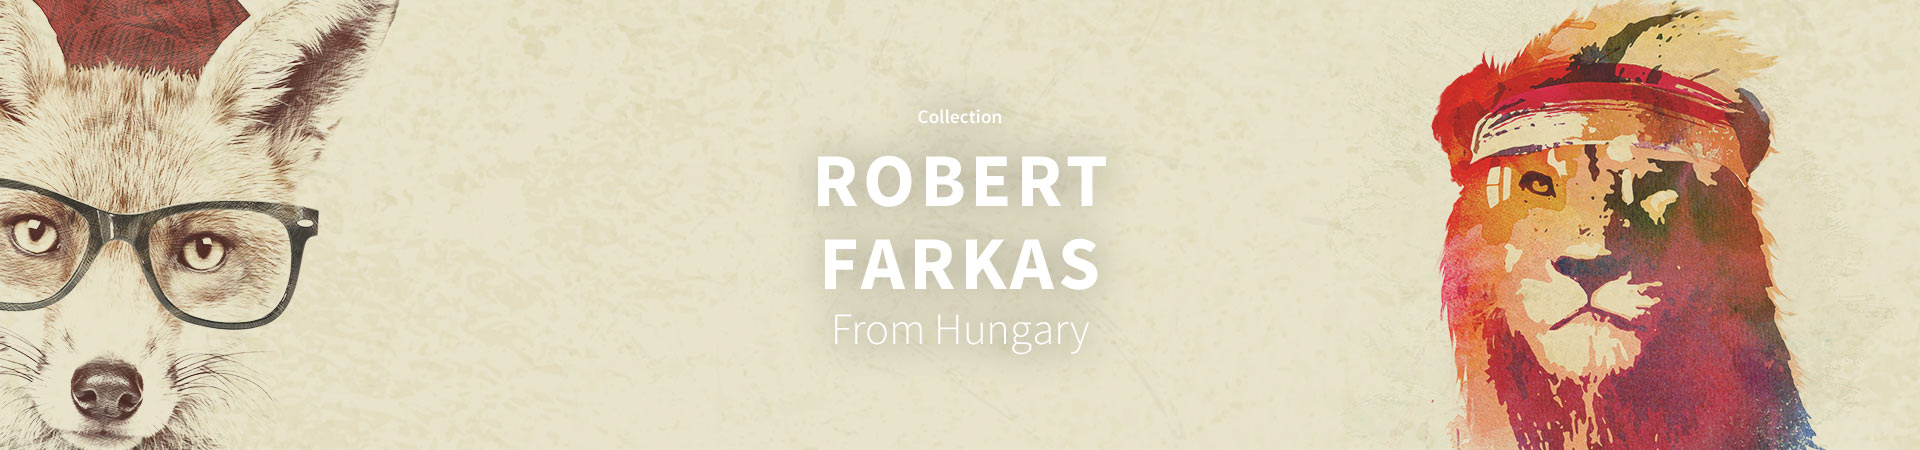 Robert Farkas